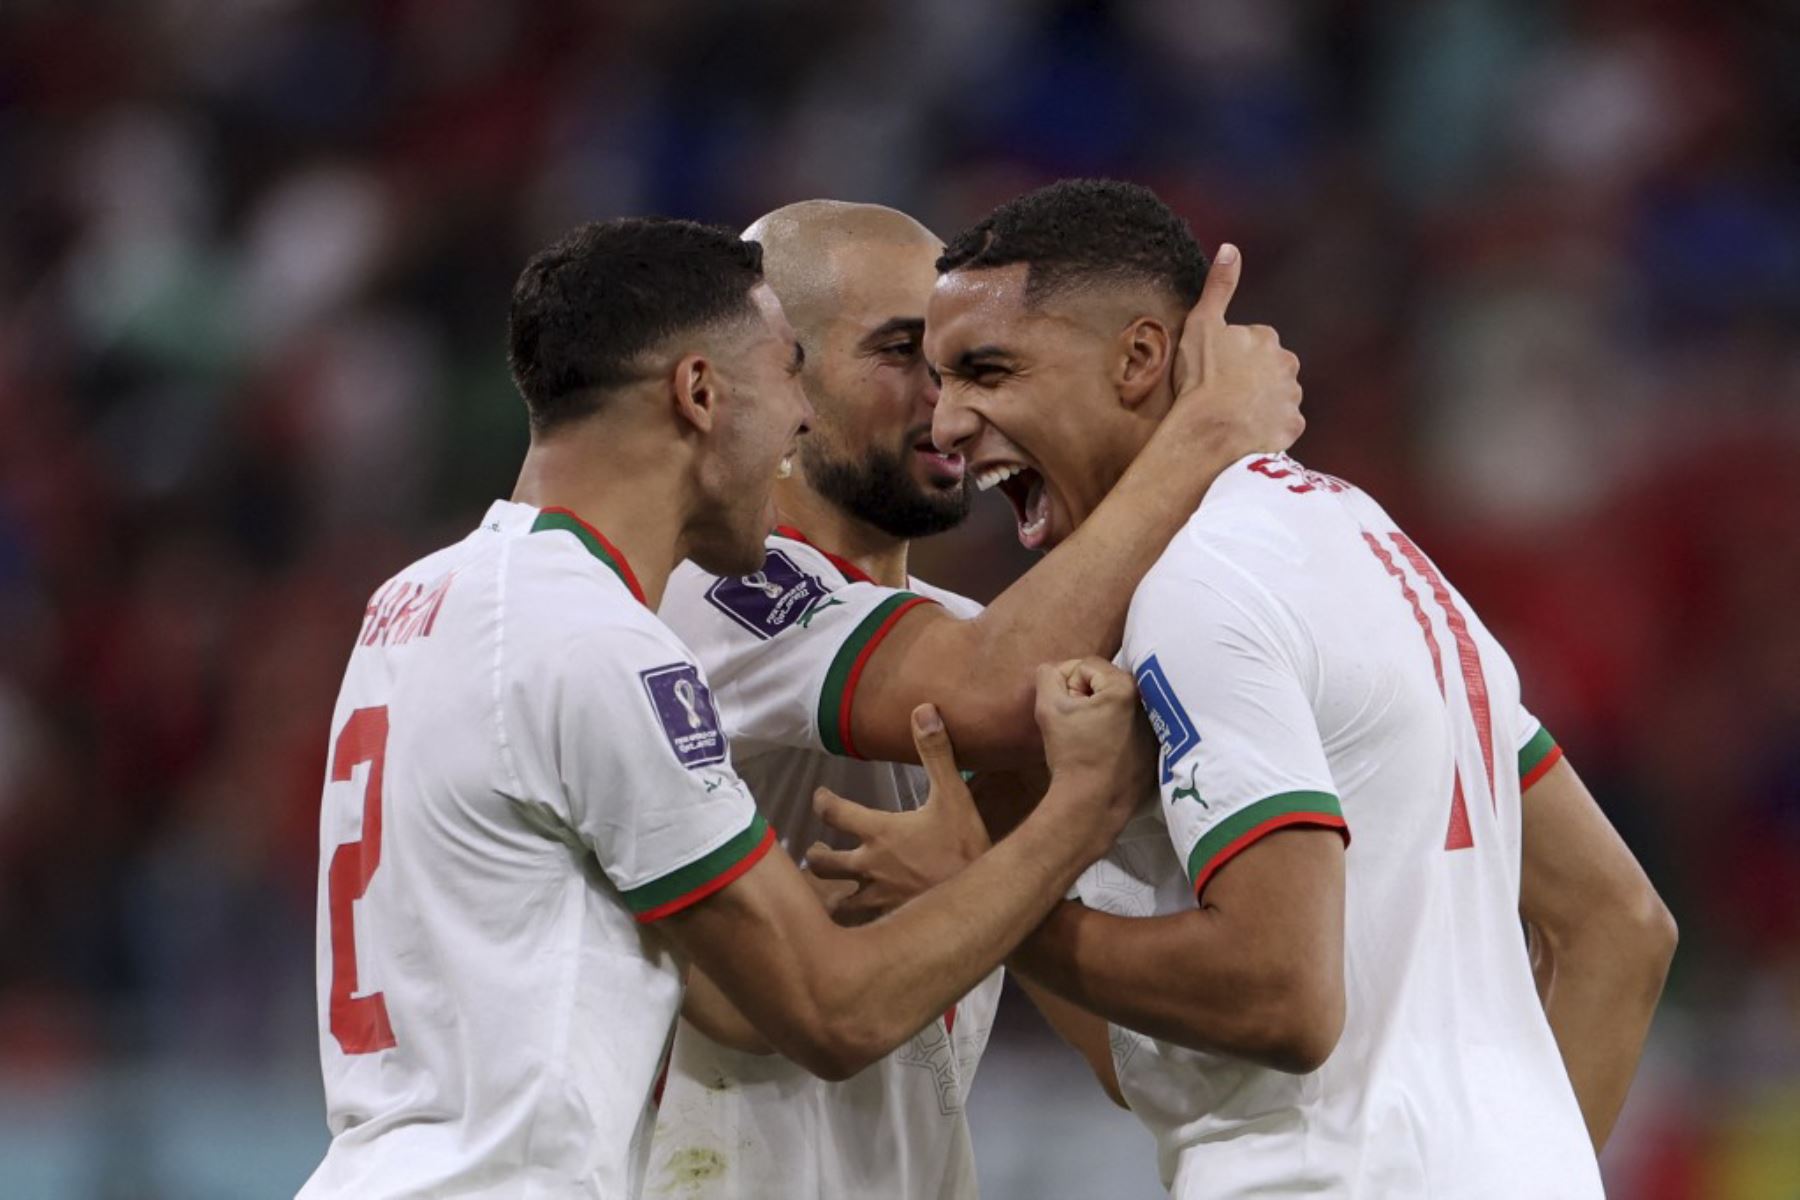 El mediocampista de Marruecos #11 Abdelhamid Sabiri celebra después de marcar el primer gol de su equipo durante el partido de fútbol del Grupo F de la Copa Mundial de Catar 2022 entre Bélgica y Marruecos en el Estadio Al-Thumama en Doha

Foto:AFP